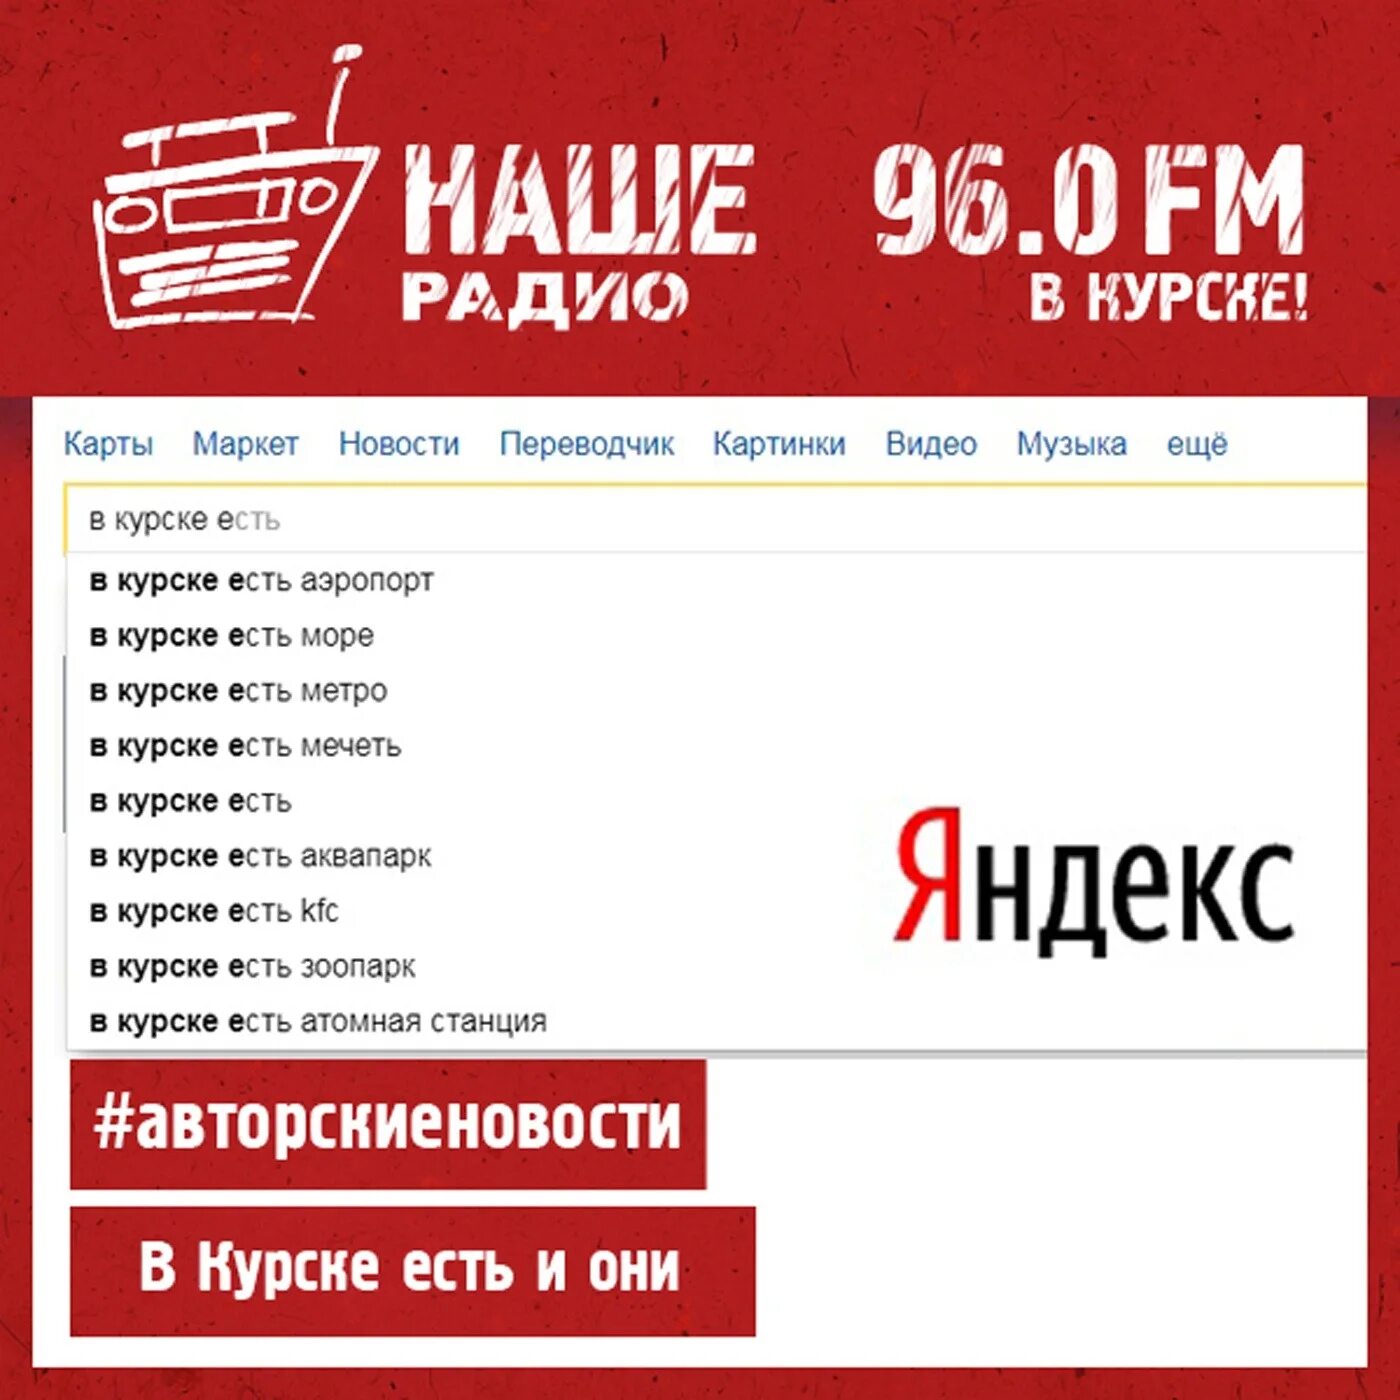 Наше радио ростов на дону. Наше радио. Наш ФМ. Наше радио Москва. Наше радио fm частота.